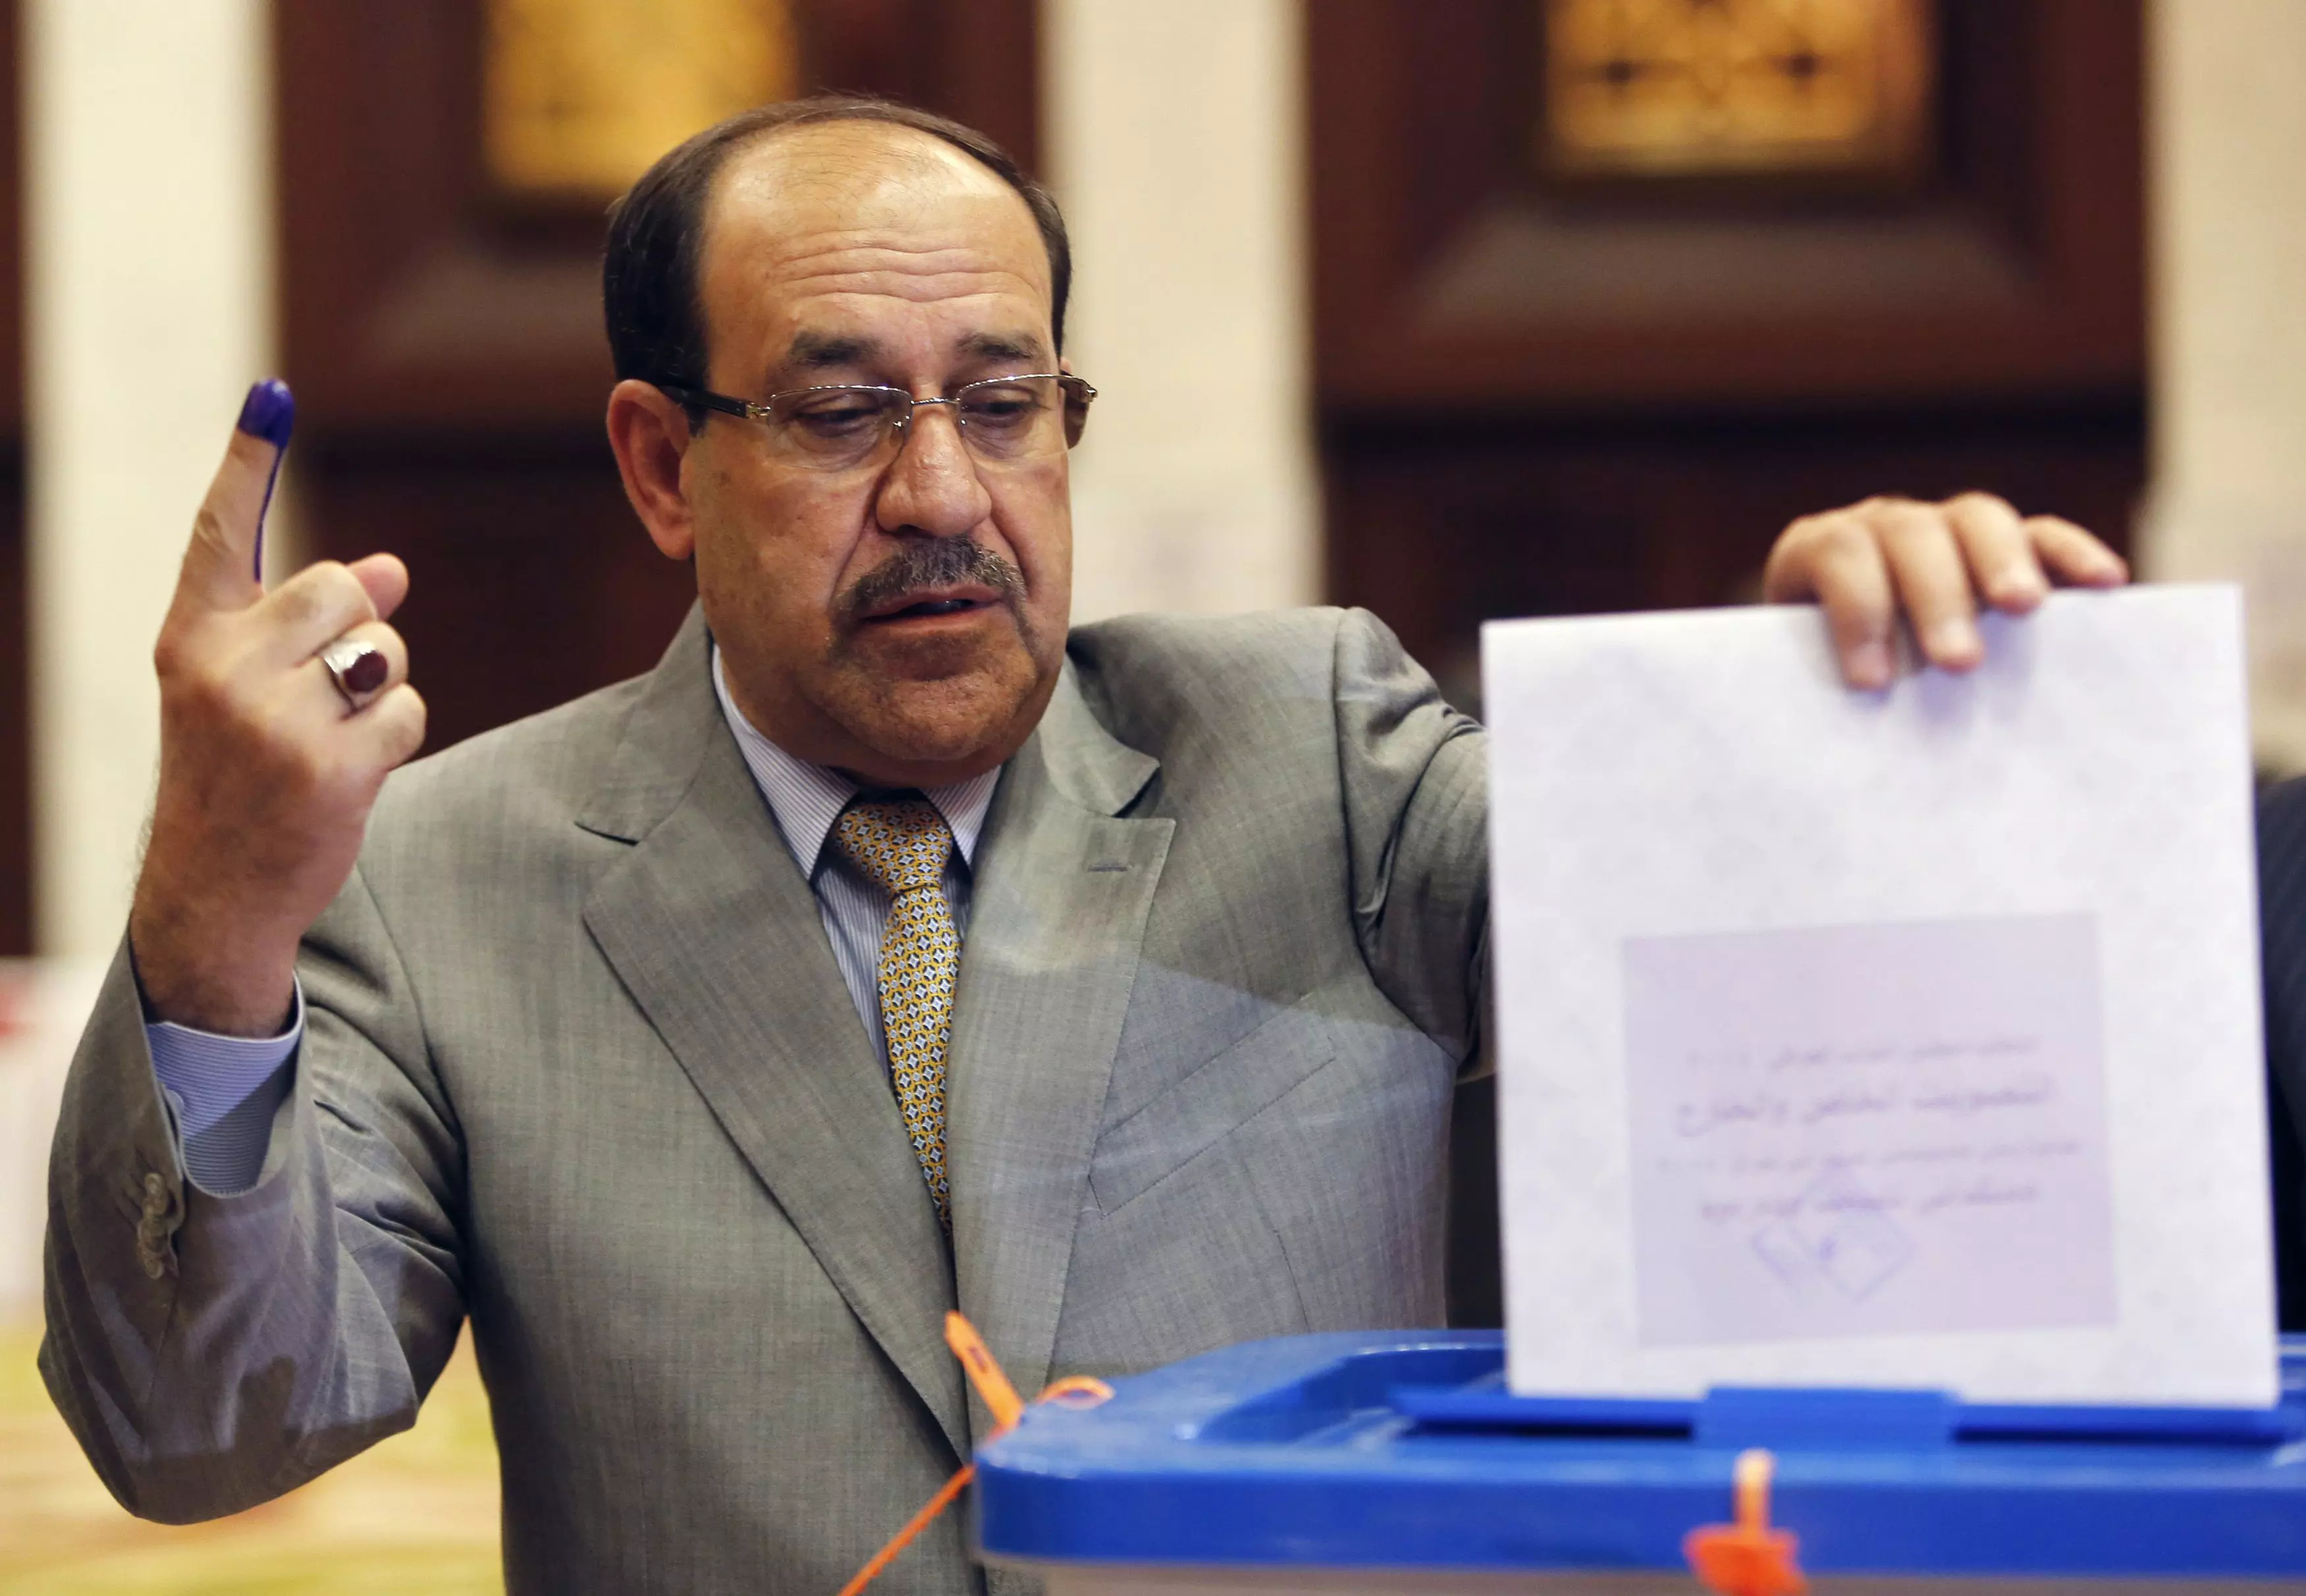 ראש ממשלת עיראק, מאליכי, מצביע בקלפי באפריל